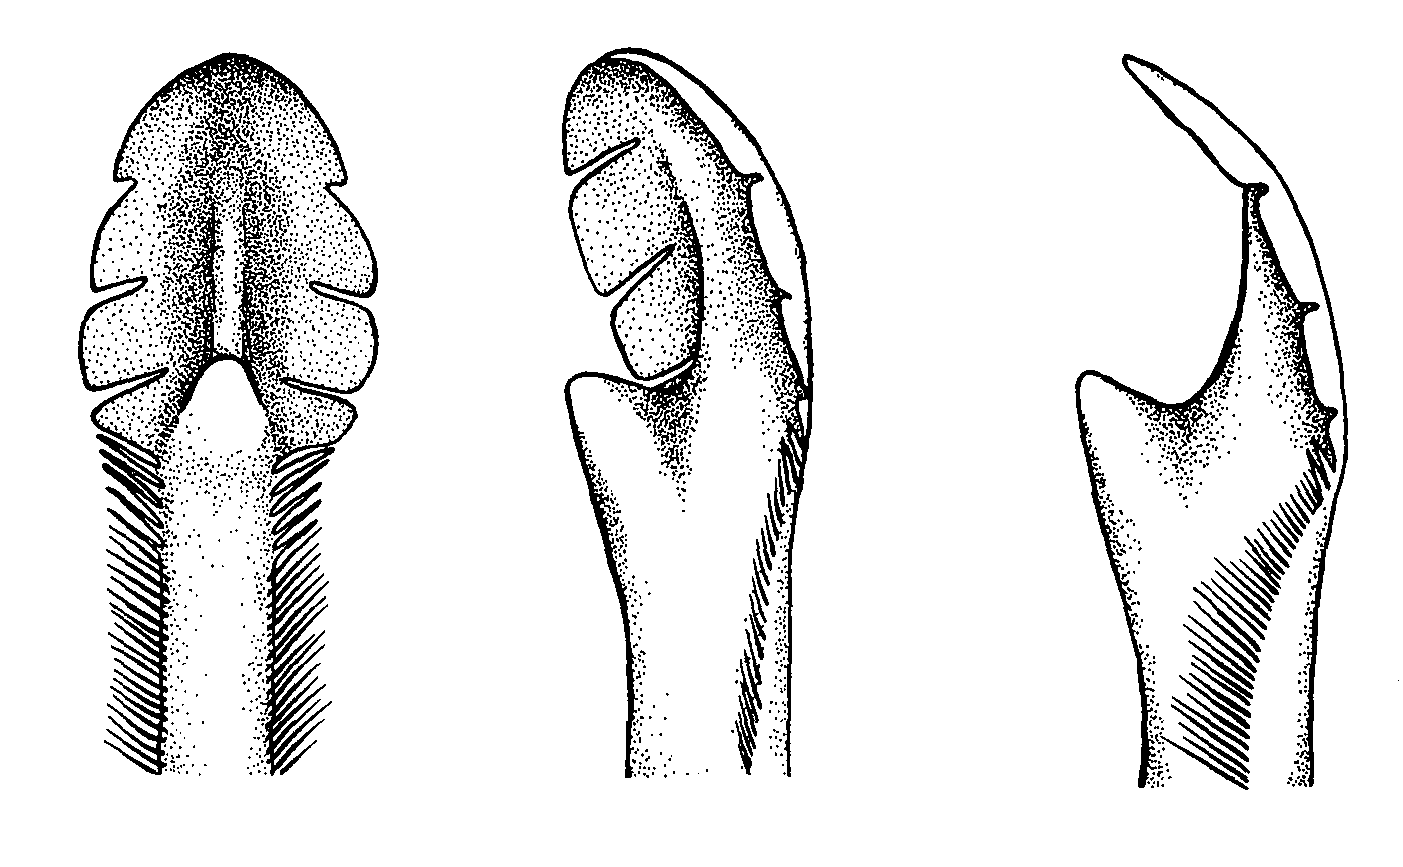 Uca heteropleura: Crane (1975) image